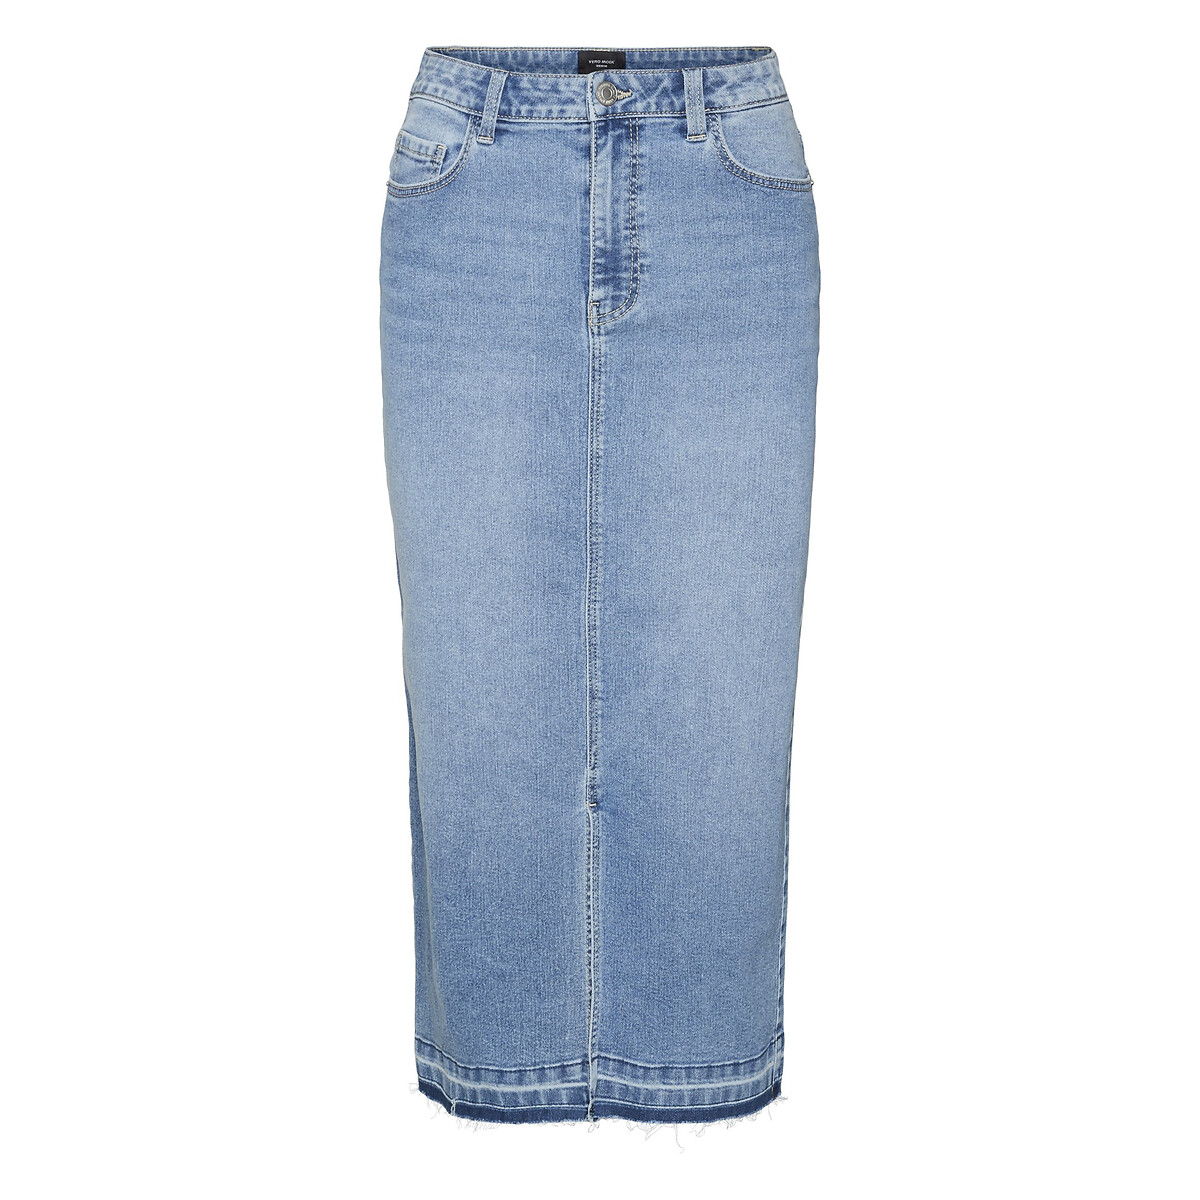 Юбка из джинсовой ткани с высокой посадкой XL синий шорты из джинсовой ткани с высокой посадкой s синий